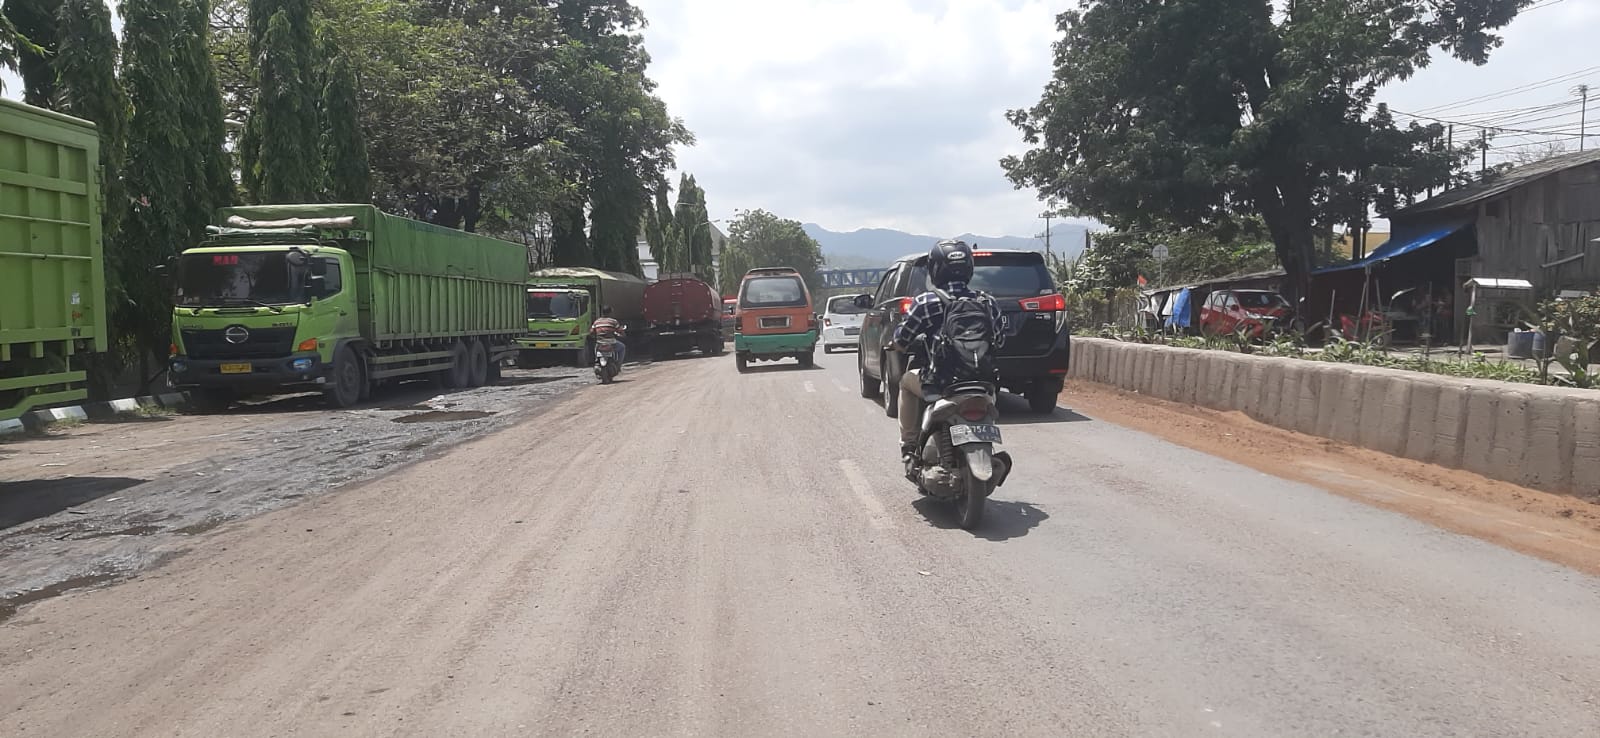 Dishub Bandar Lampung Larang Kendaraan Angkutan Berat Parkir di Bahu Jl. Yos Sudarso